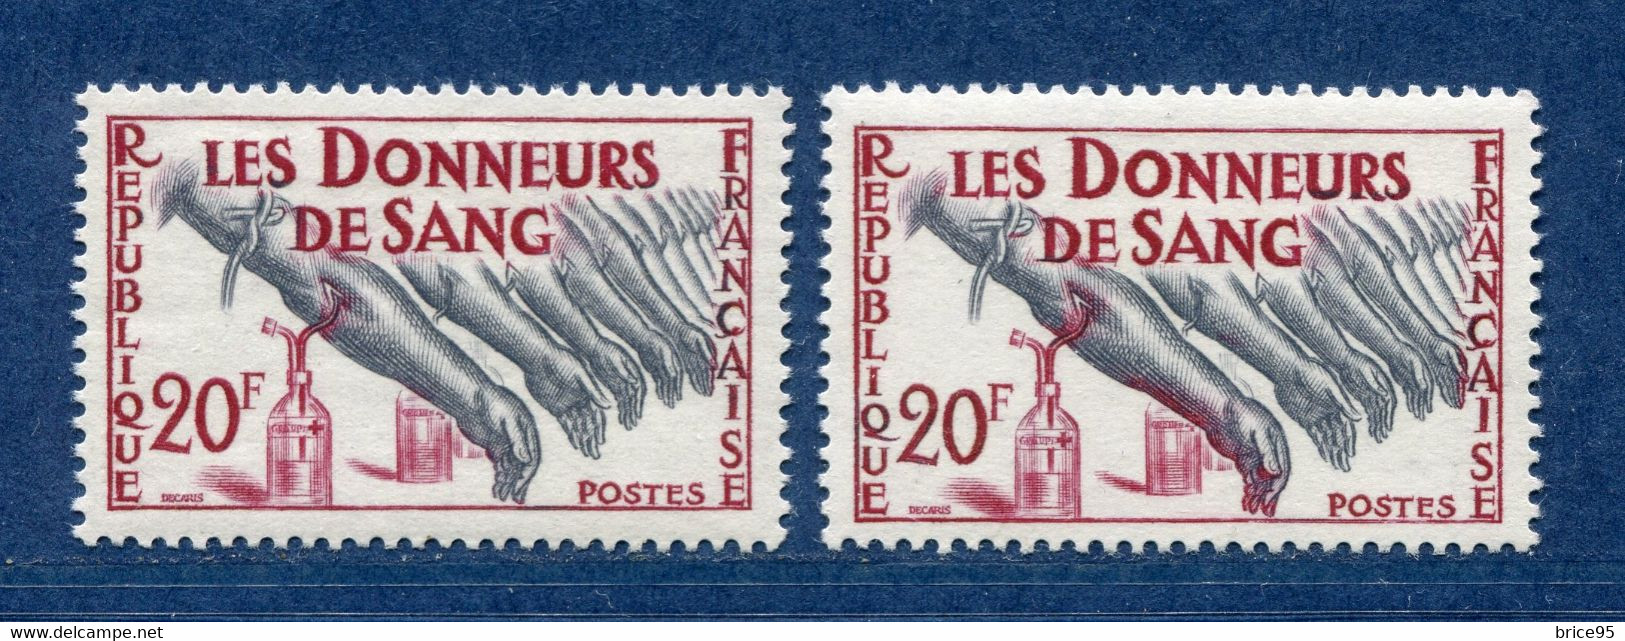 ⭐ France - Variété - YT N° 1220 - Couleurs - Pétouille - Neuf Sans Charnière - 1959 ⭐ - Unused Stamps